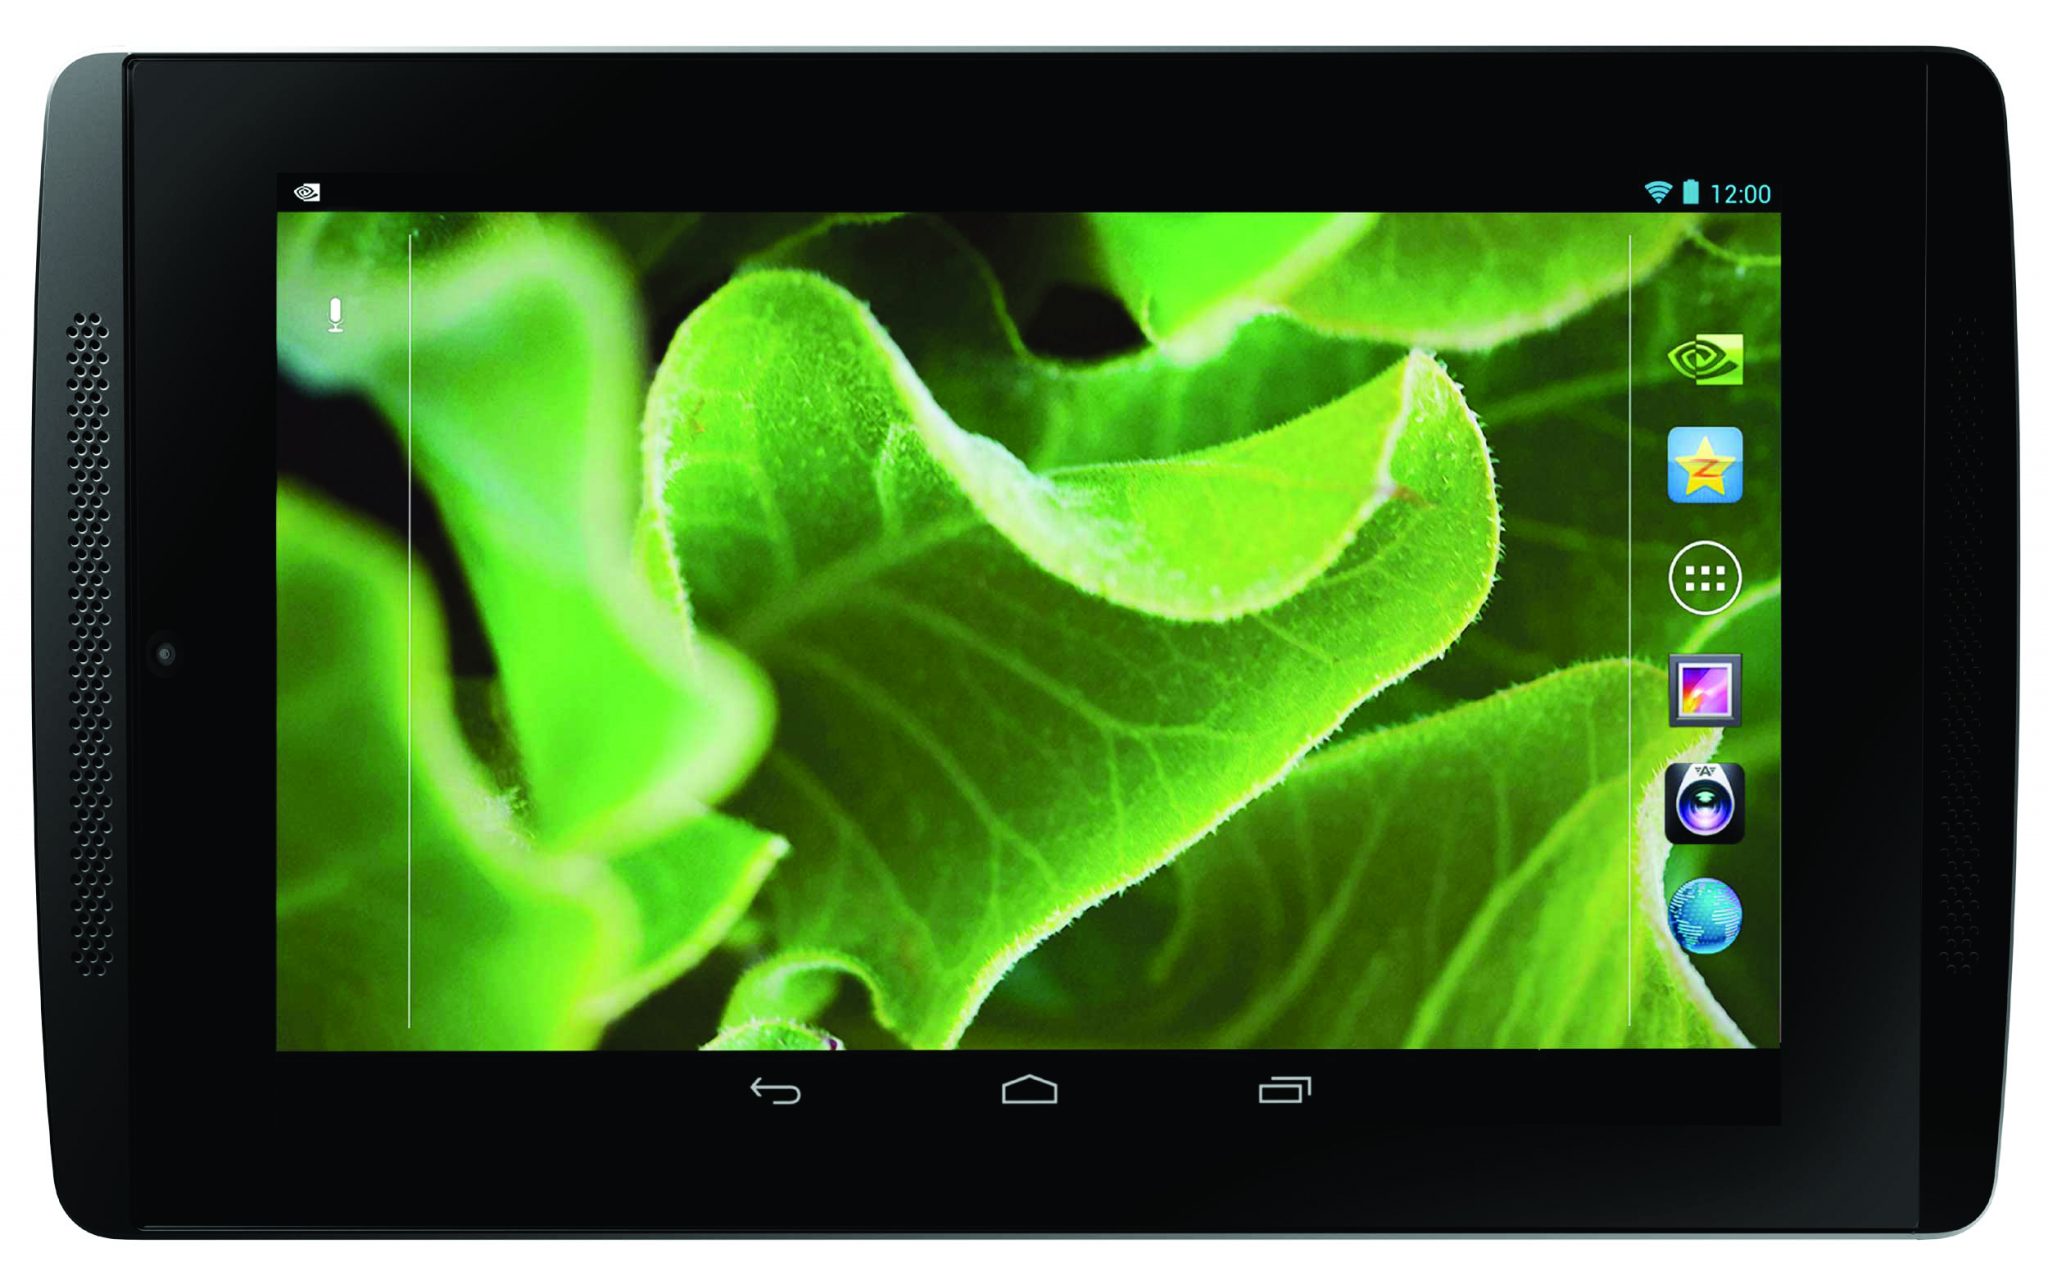 Especificaciones de la Advent Vega, una tablet Android con Tegra 2 y procesador de doble núcleo